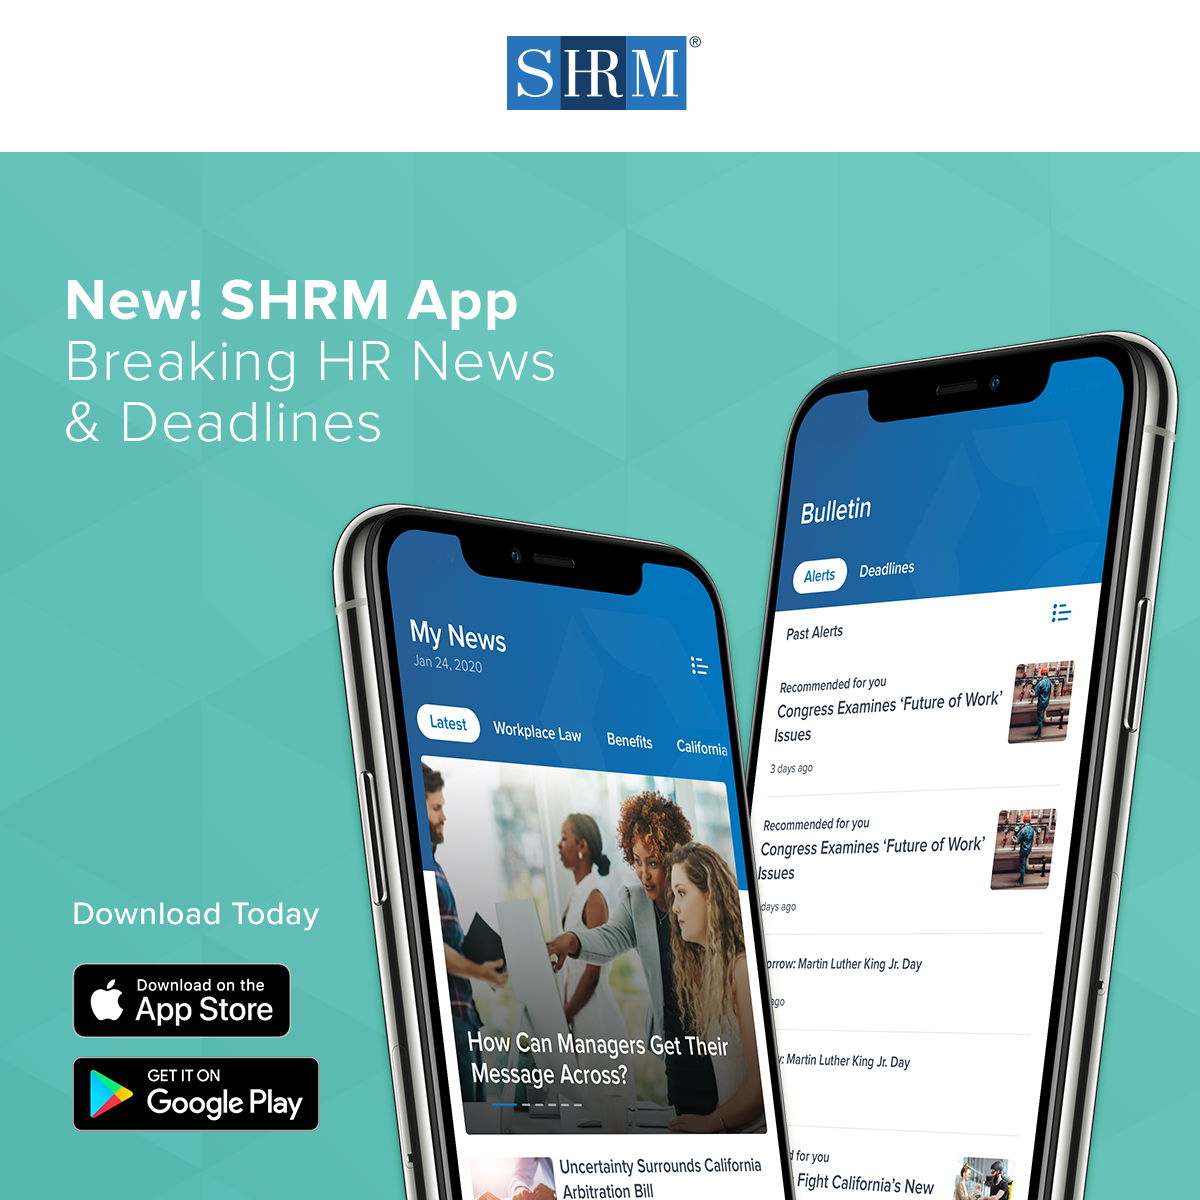 NEW SHRM App